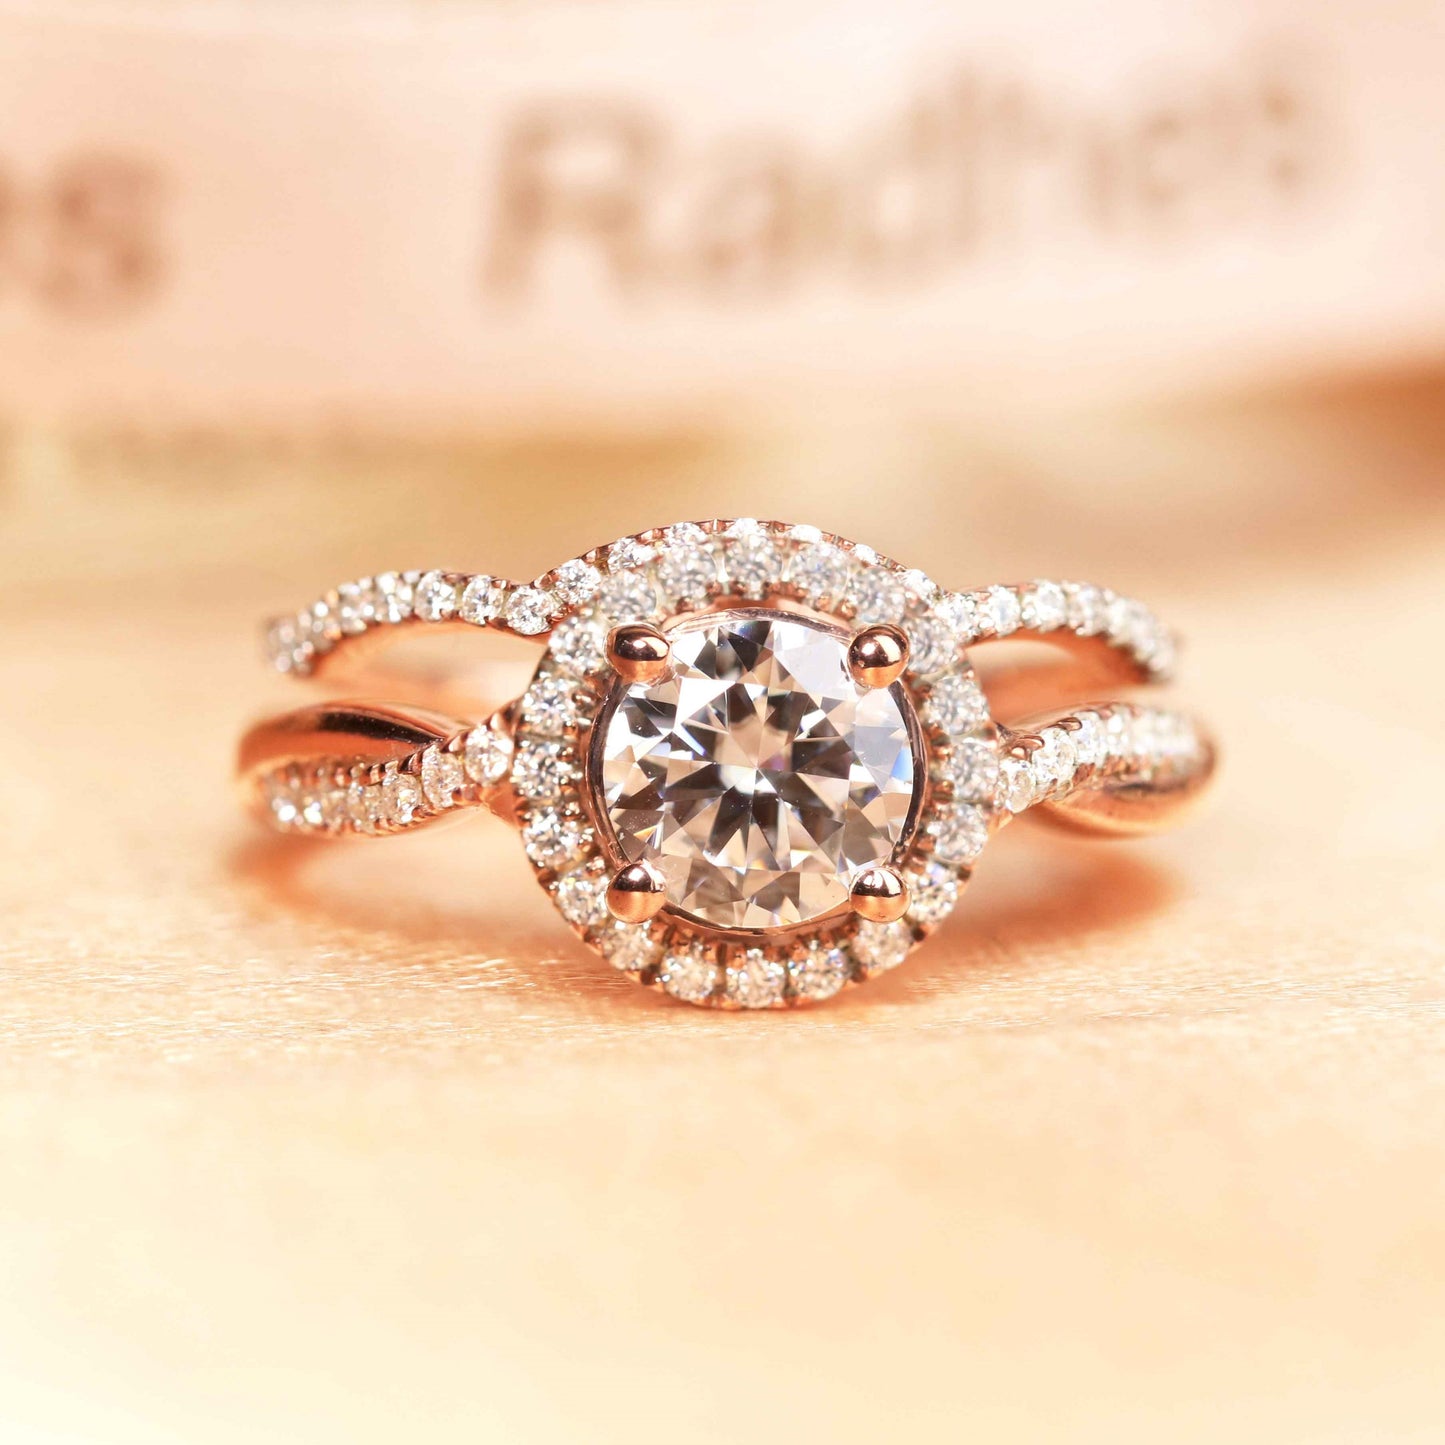 Bestselling vintage 1.6 carat Round cut Moissanite milgrain Wedding Ring Set in Rose Gold